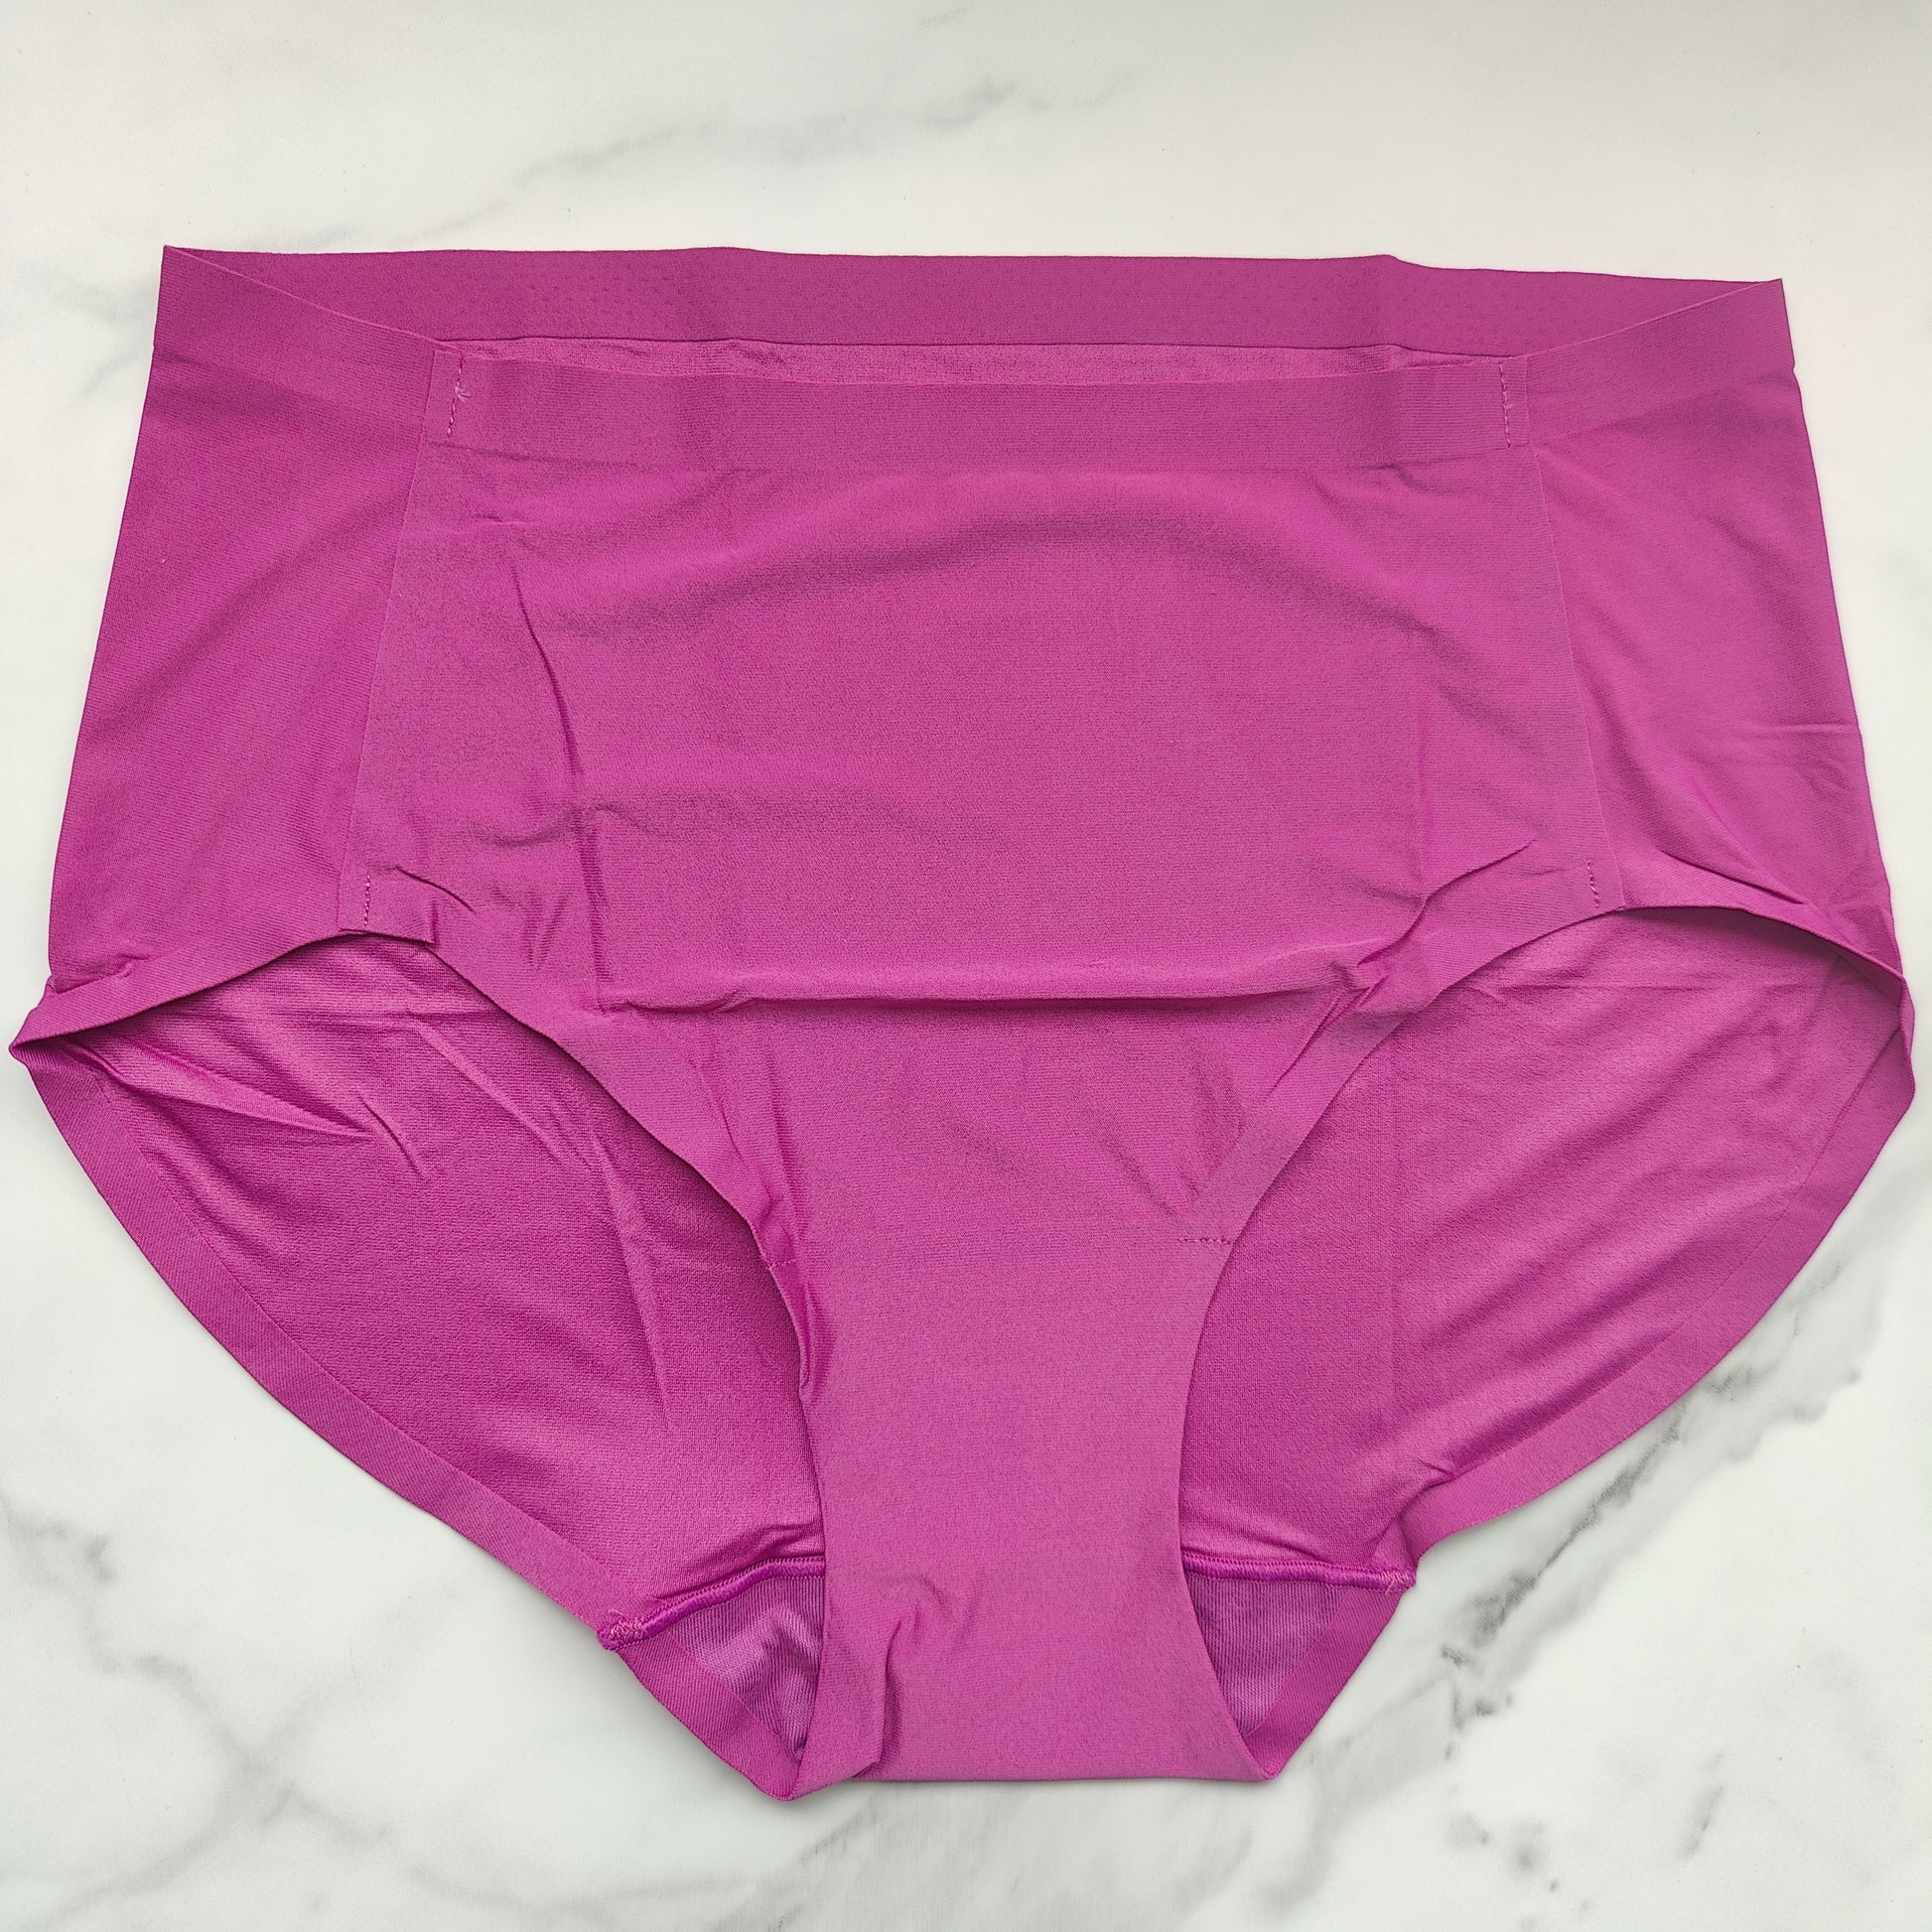 Soma Women's Vanishing Tummy Modern Brief Underwear In Ivory Size Large